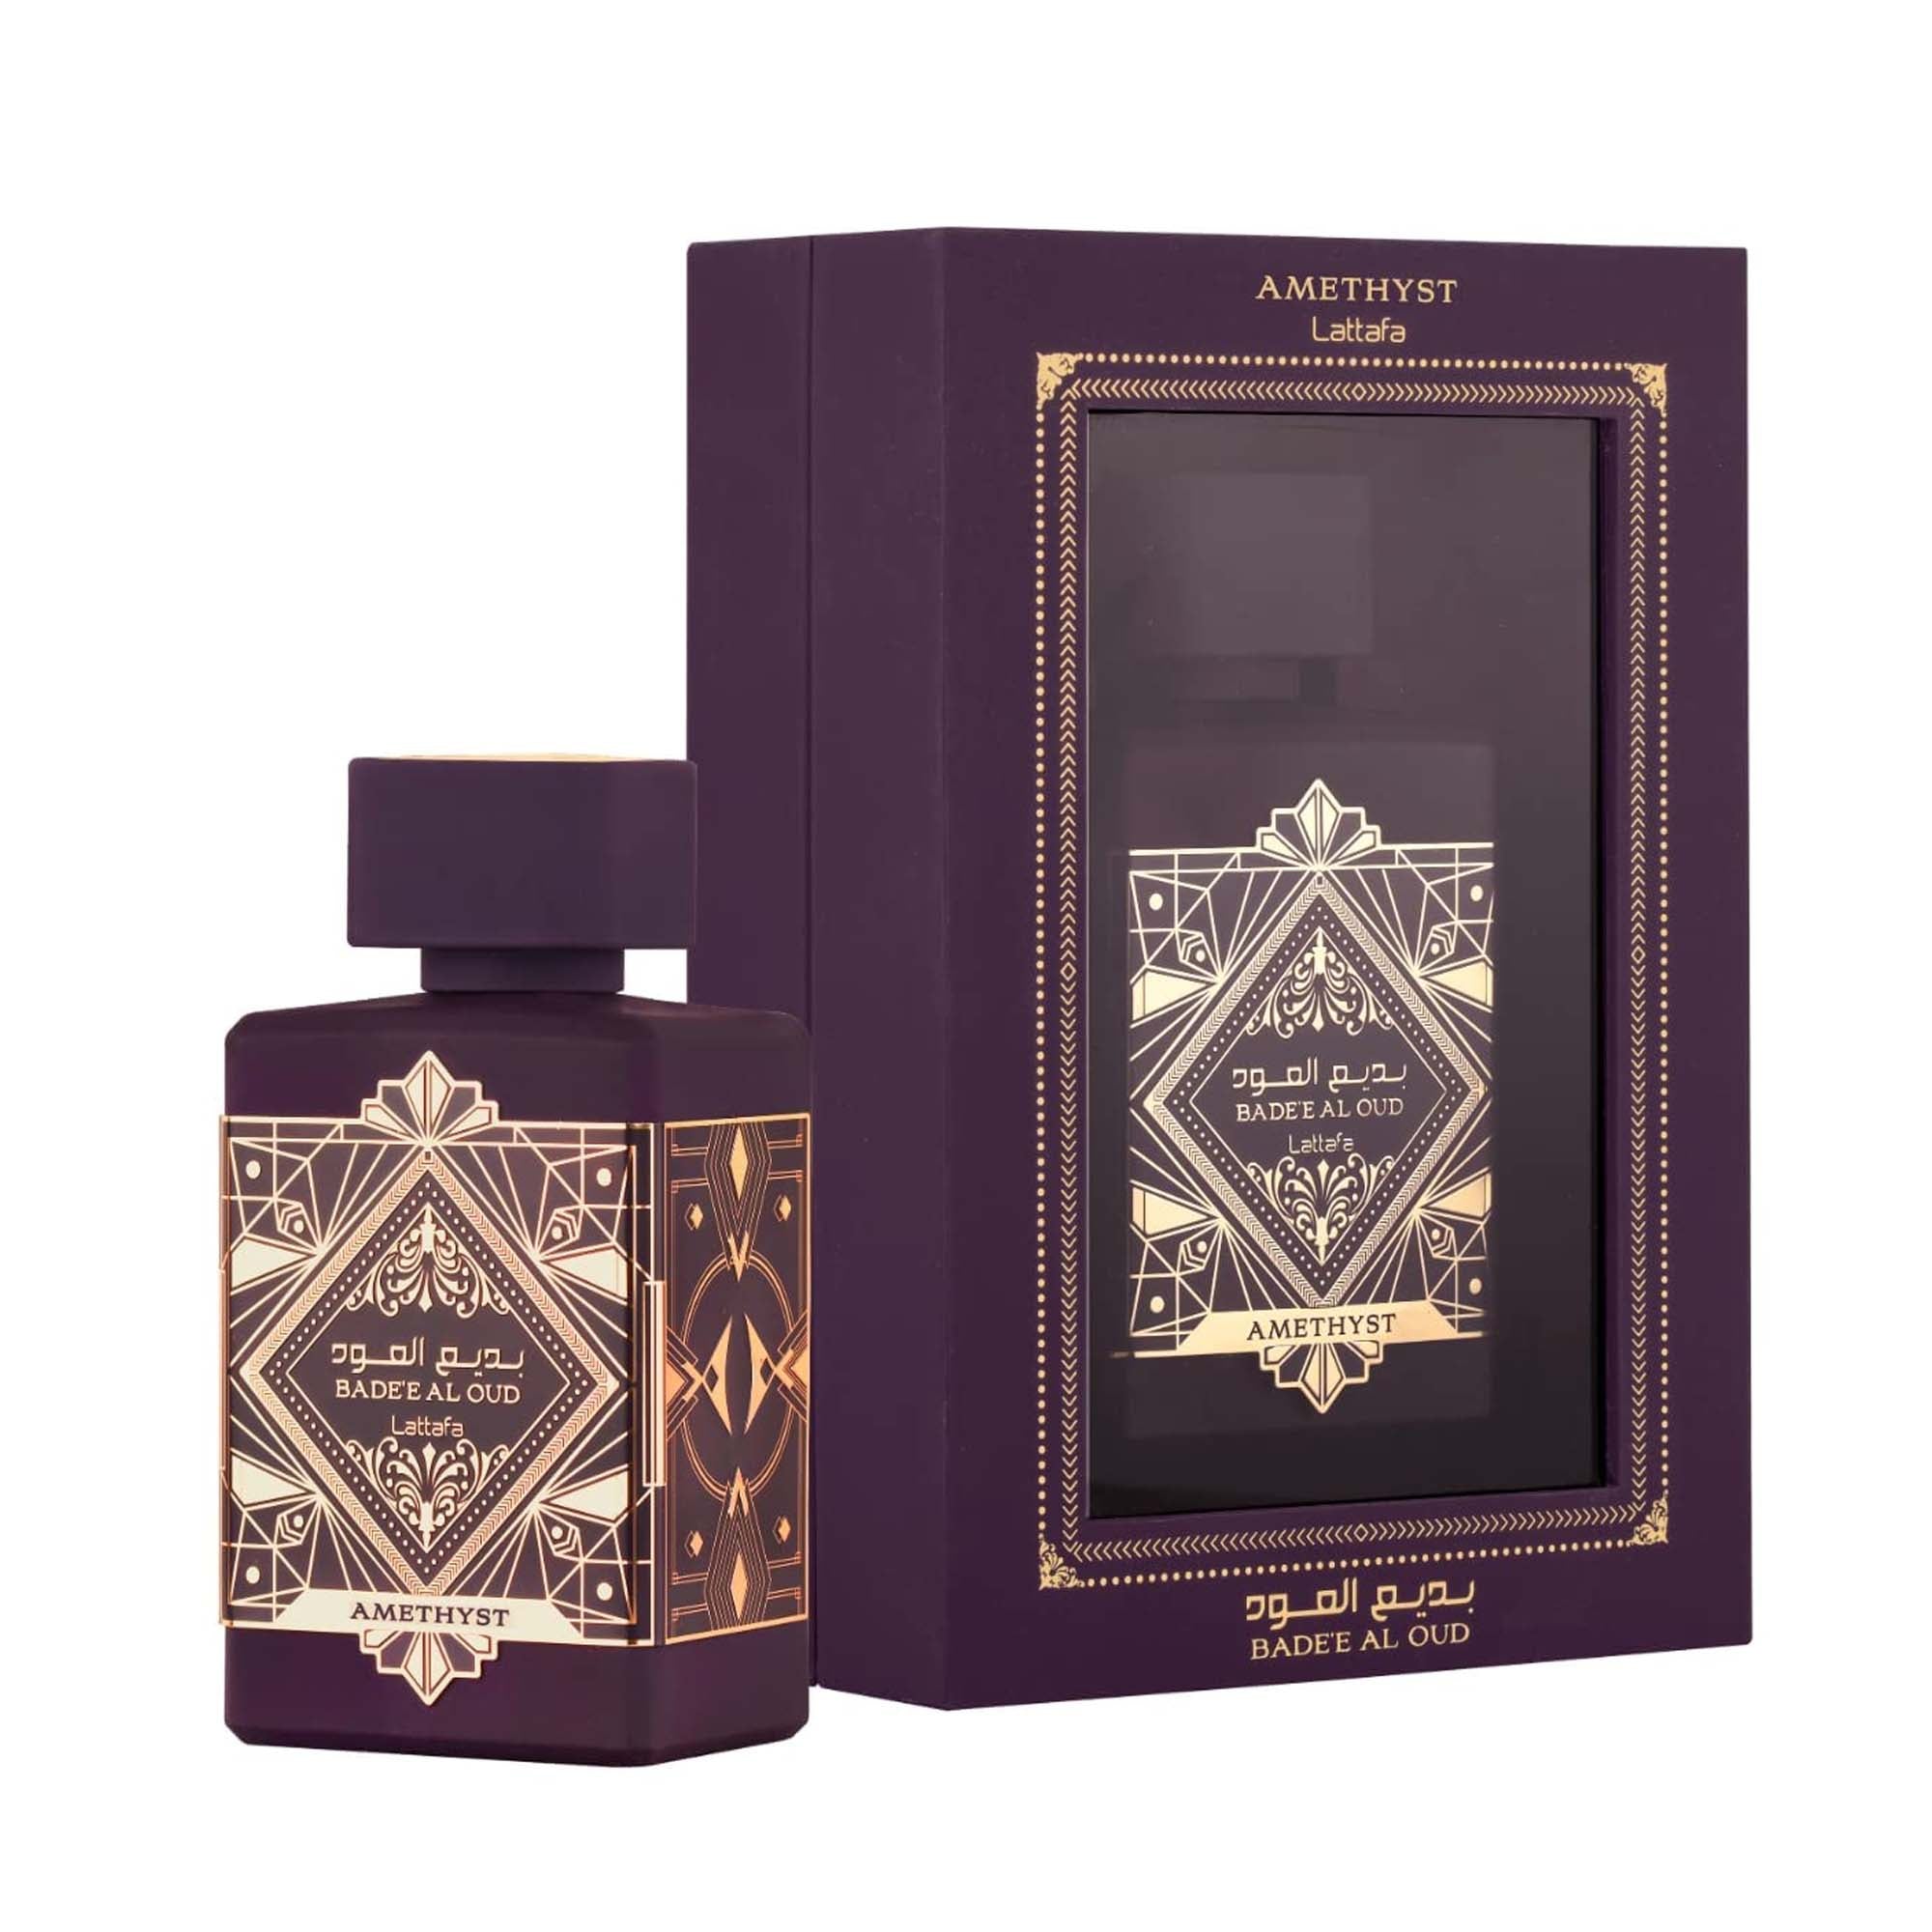 Lattafa Bade’e Al Oud Amethyst Perfume